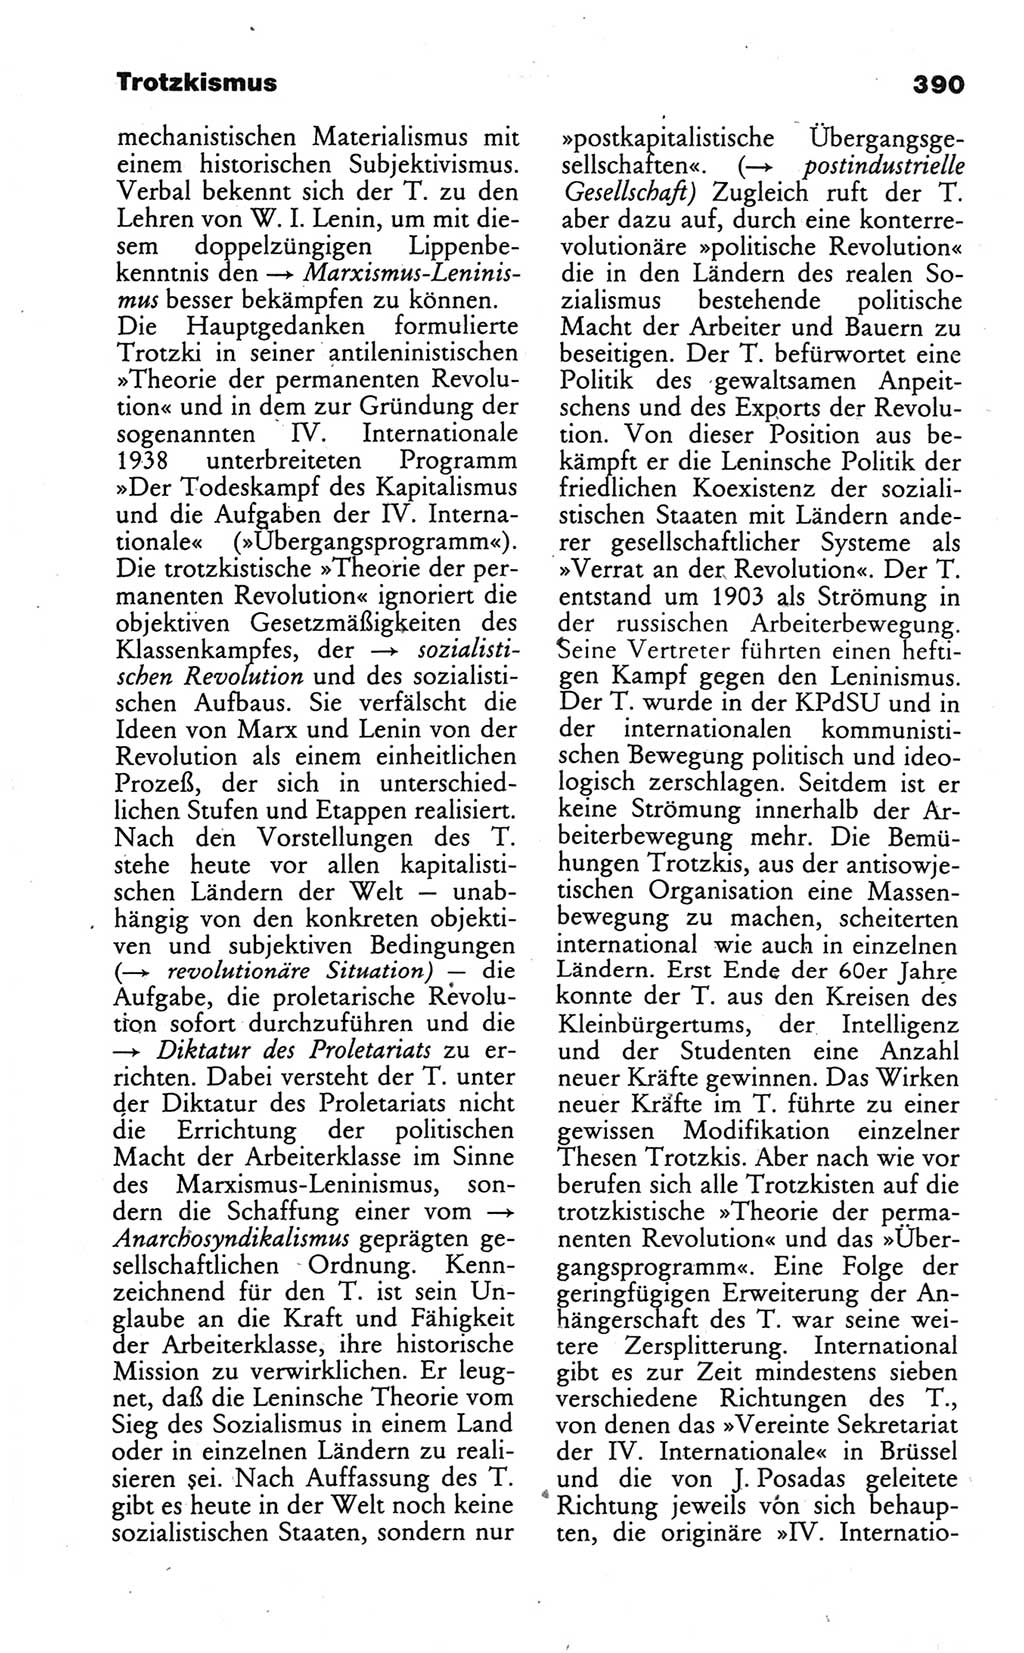 Wörterbuch des wissenschaftlichen Kommunismus [Deutsche Demokratische Republik (DDR)] 1986, Seite 390 (Wb. wiss. Komm. DDR 1986, S. 390)